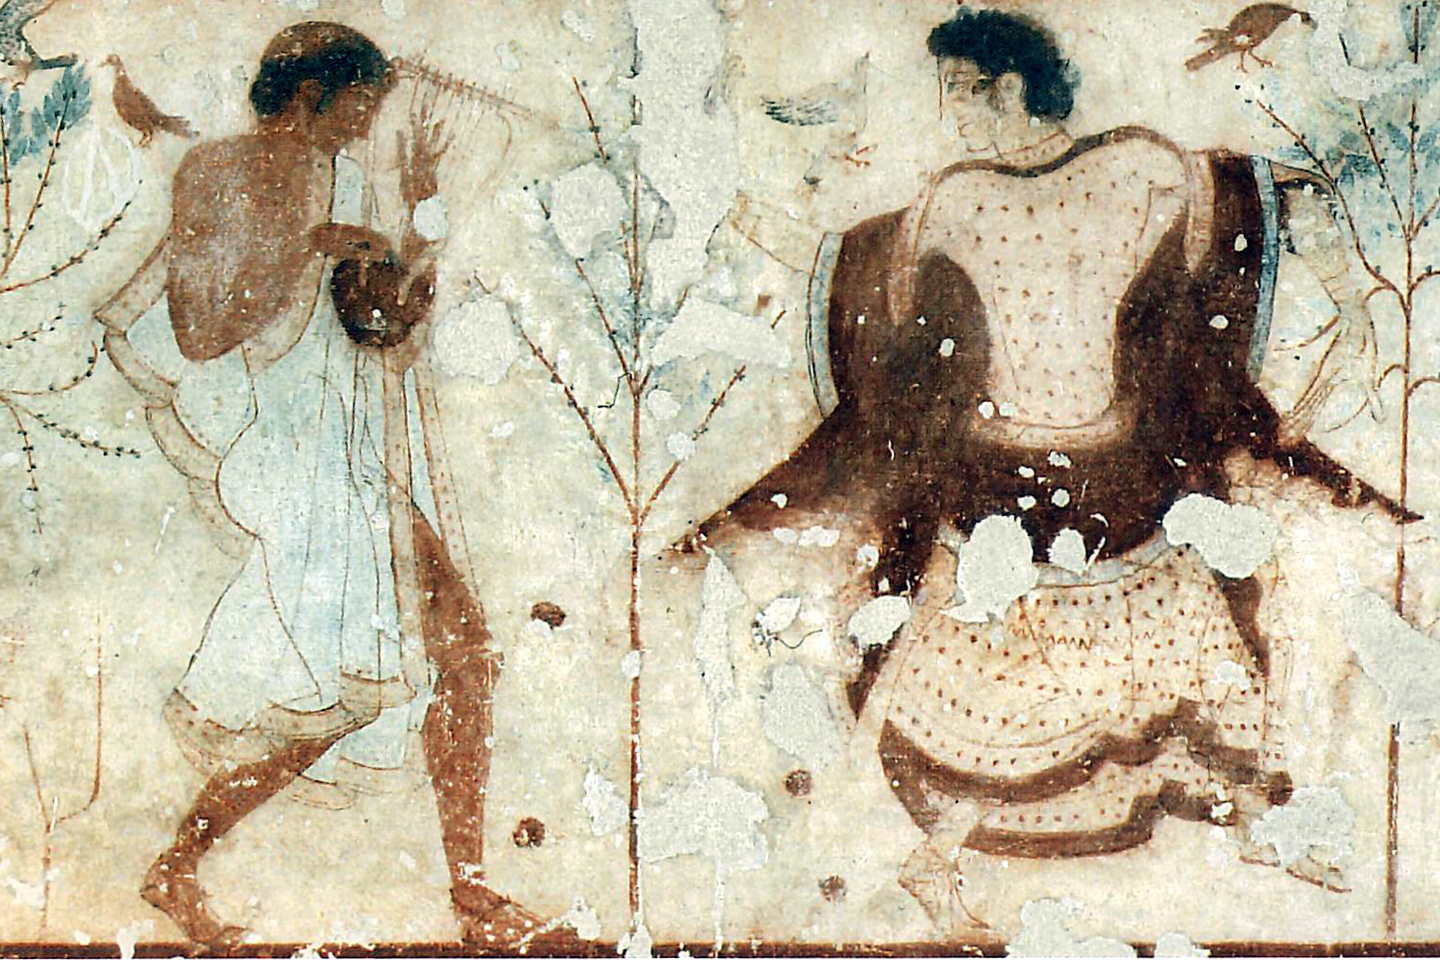  Kapų ir urnų vaizdai padeda suprasti etruskų bei romėnų civilizacijų sudėtingumą mažiausiai prieš 2000 metų. Jas galima atgaivinti moderniais laikais.<br> „Texdance“ iliustr.